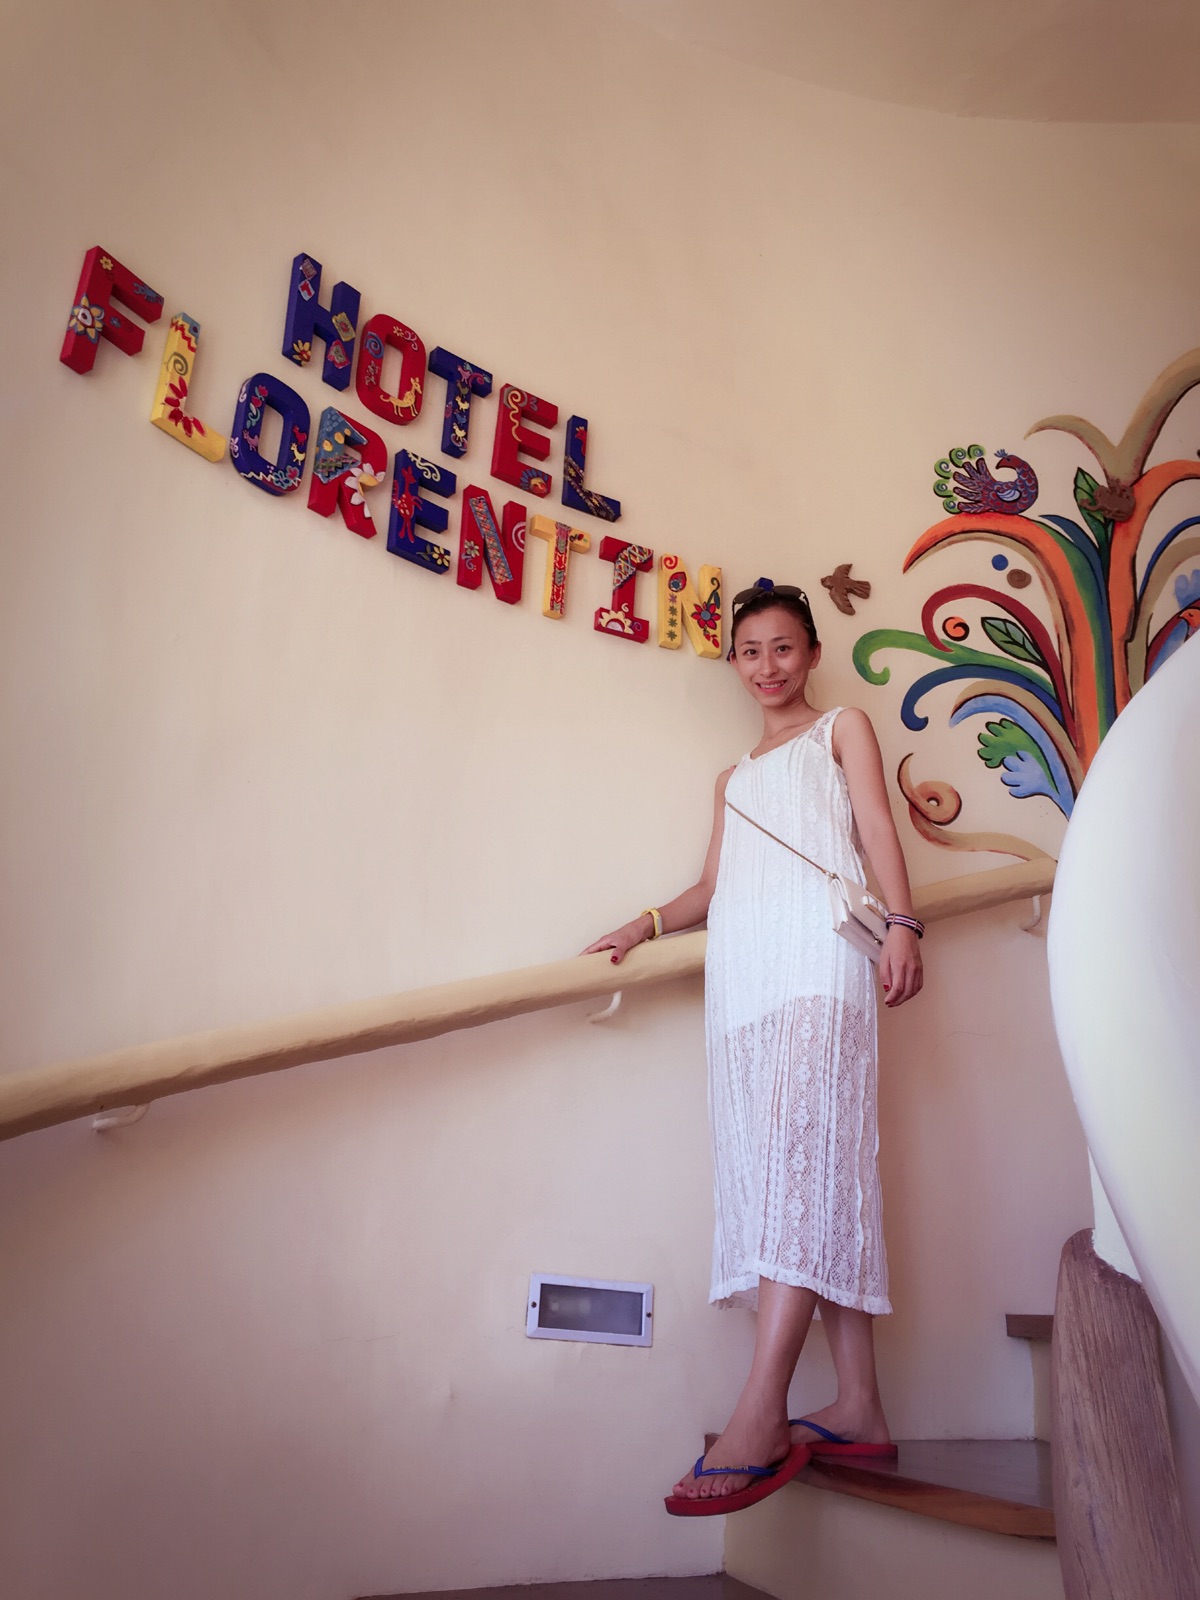 在杜马盖地算比较好的酒店了，装饰很漂亮。每个细节都给了我惊喜，喜欢，楼